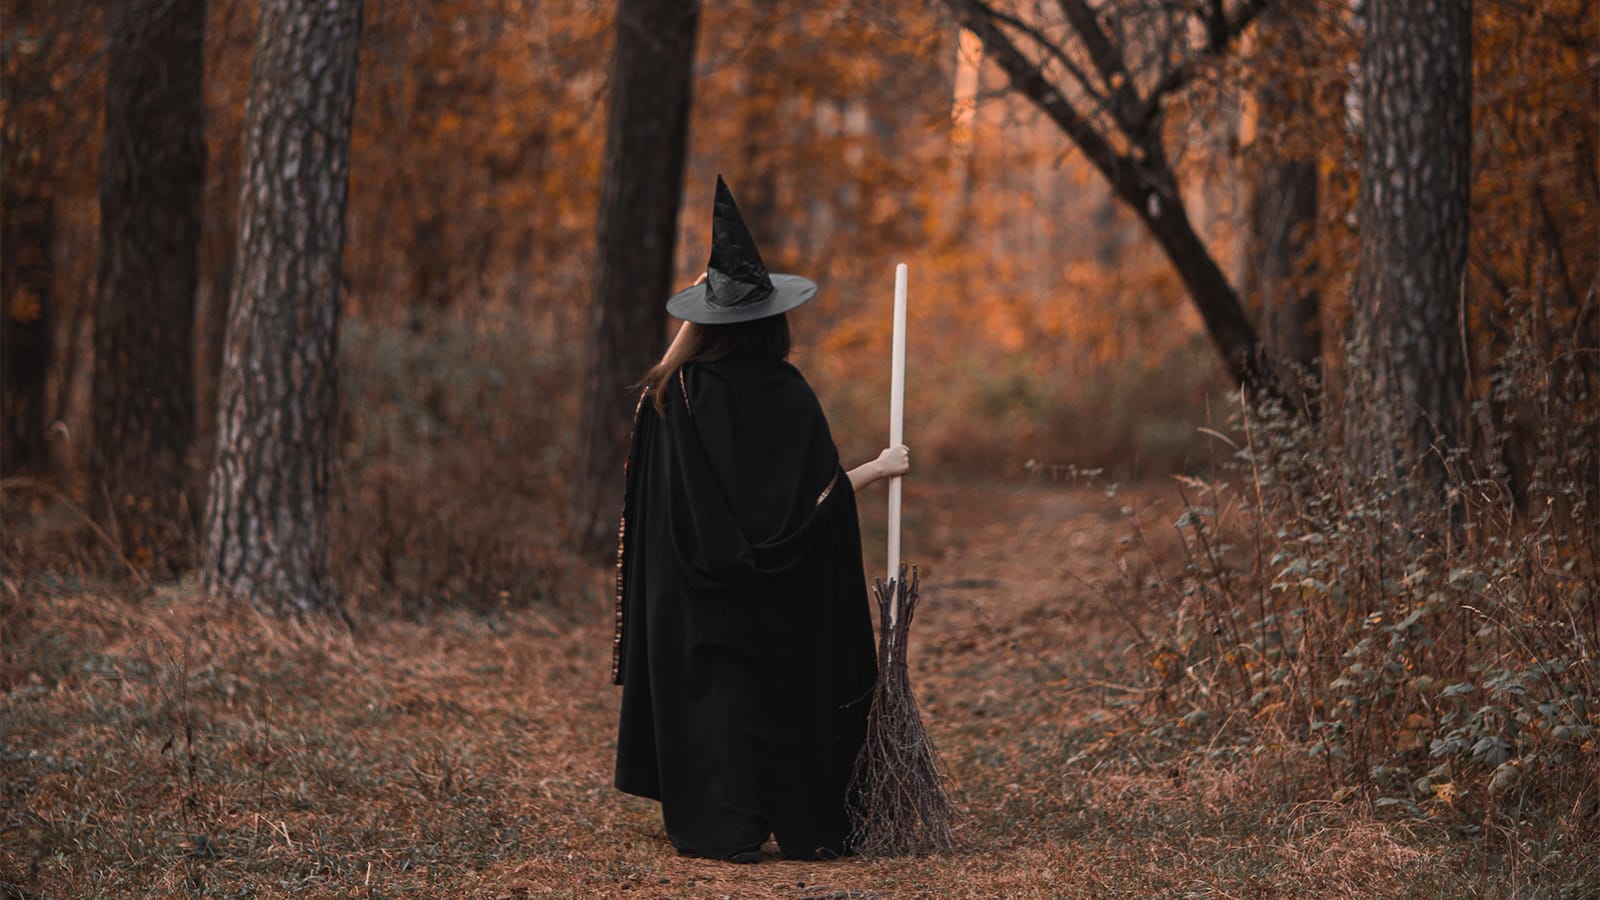 A witch walks through an autumnal forest